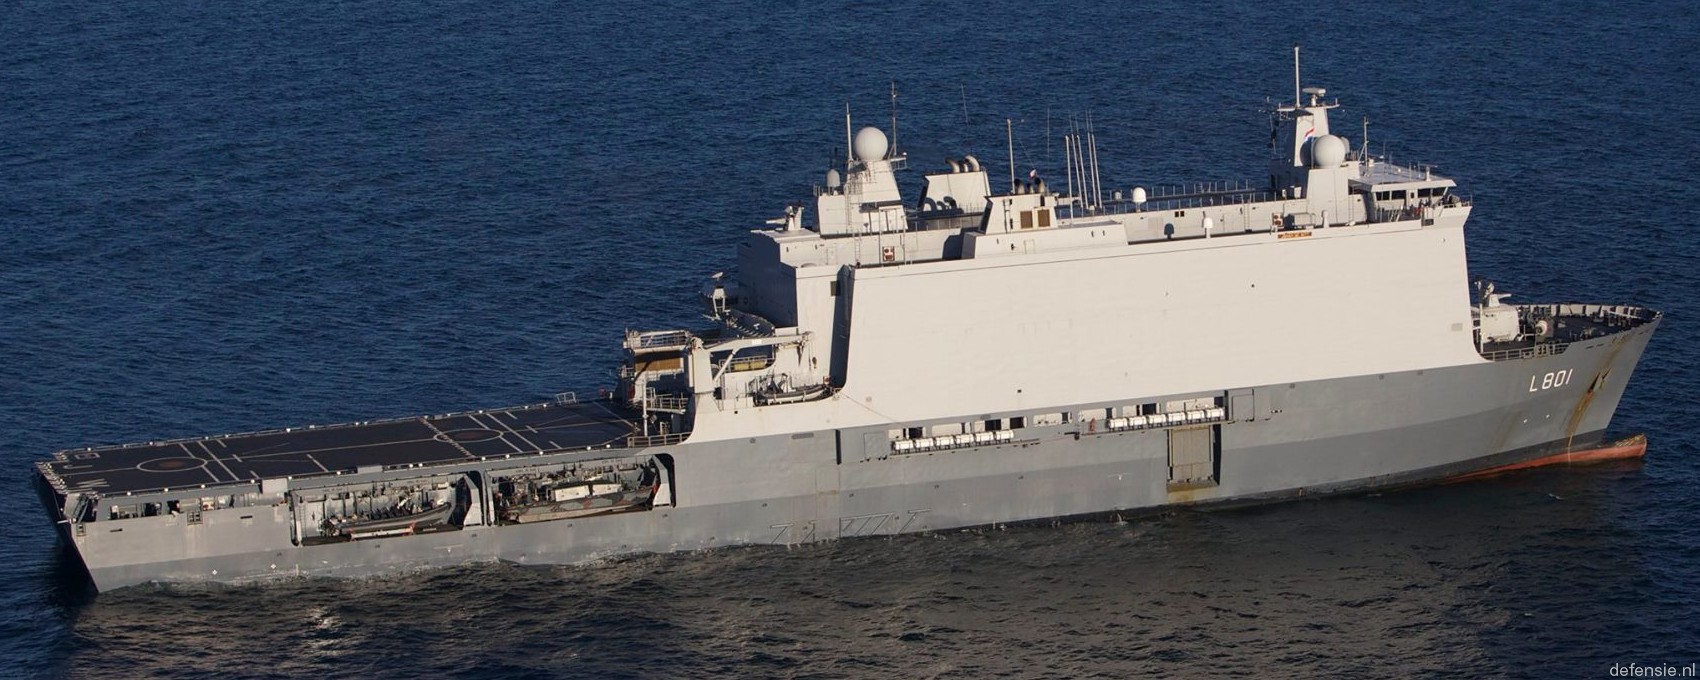 l-801 hnlms johan de witt amphibious ship landing platform dock lpd royal netherlands navy 21